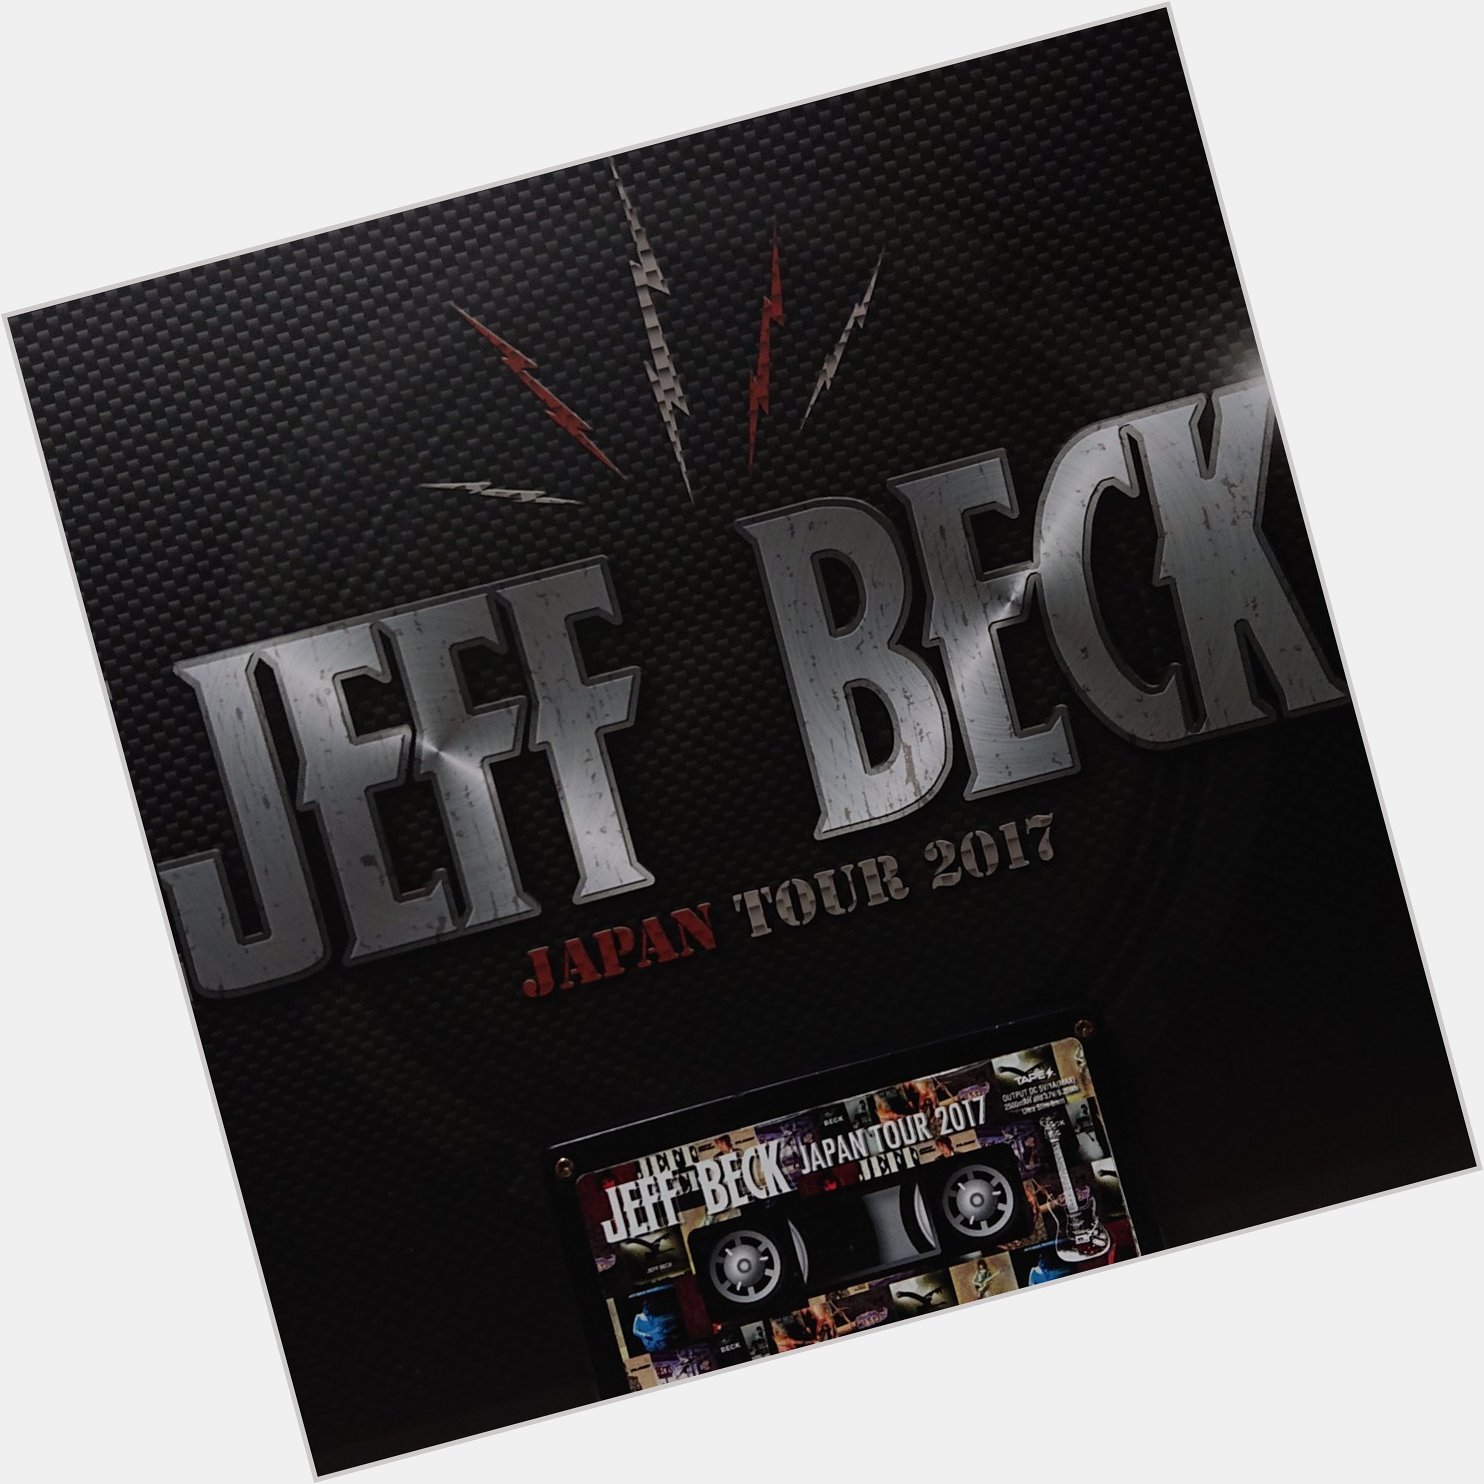 Happy Birthday Jeff Beck!  